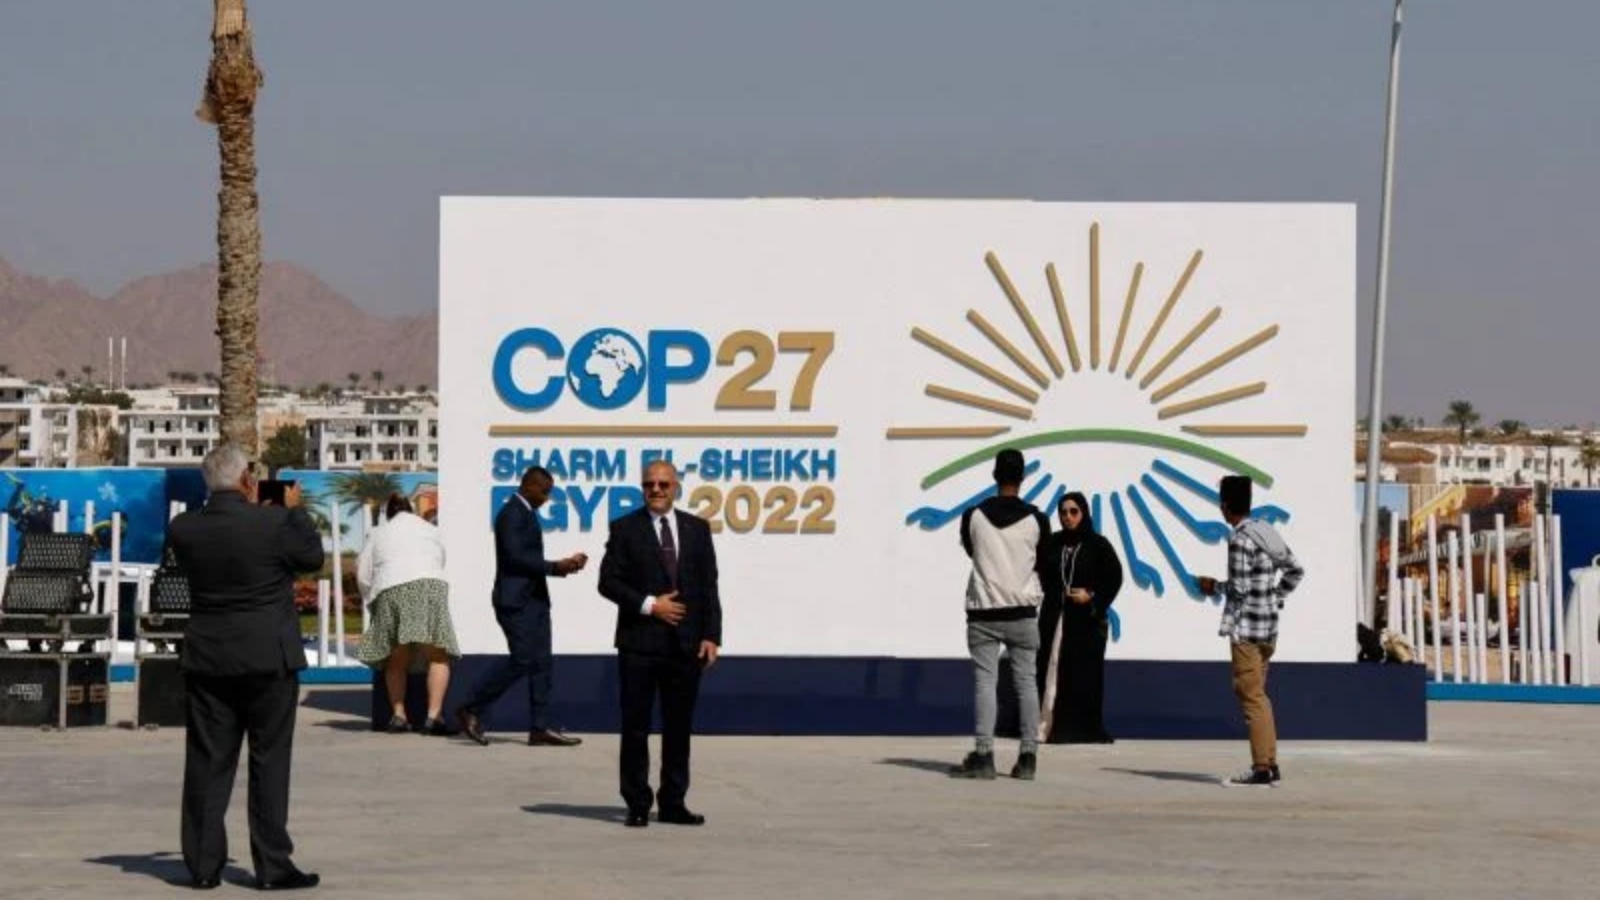 وصول المشاركين إلى مركز شرم الشيخ الدولي للمؤتمرات ، في اليوم الأول من قمة المناخ COP27، في منتجع شرم الشيخ المصري المطل على البحر الأحمر، في 6 نوفمبر 2022 